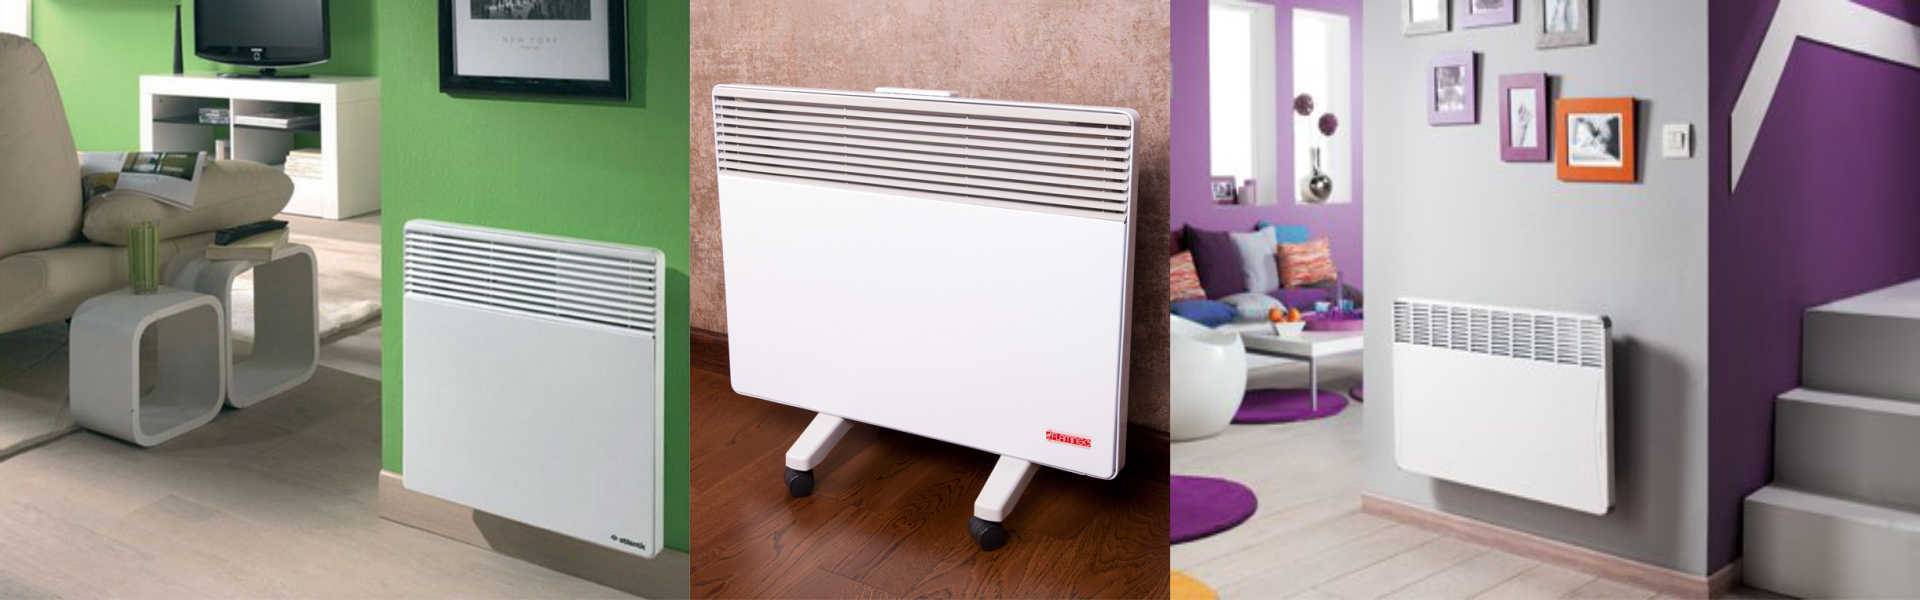 Отопление электроконвекторами - особенности устройства для частного дома, какой выбрать: настенный или напольный, фото +видео примеры